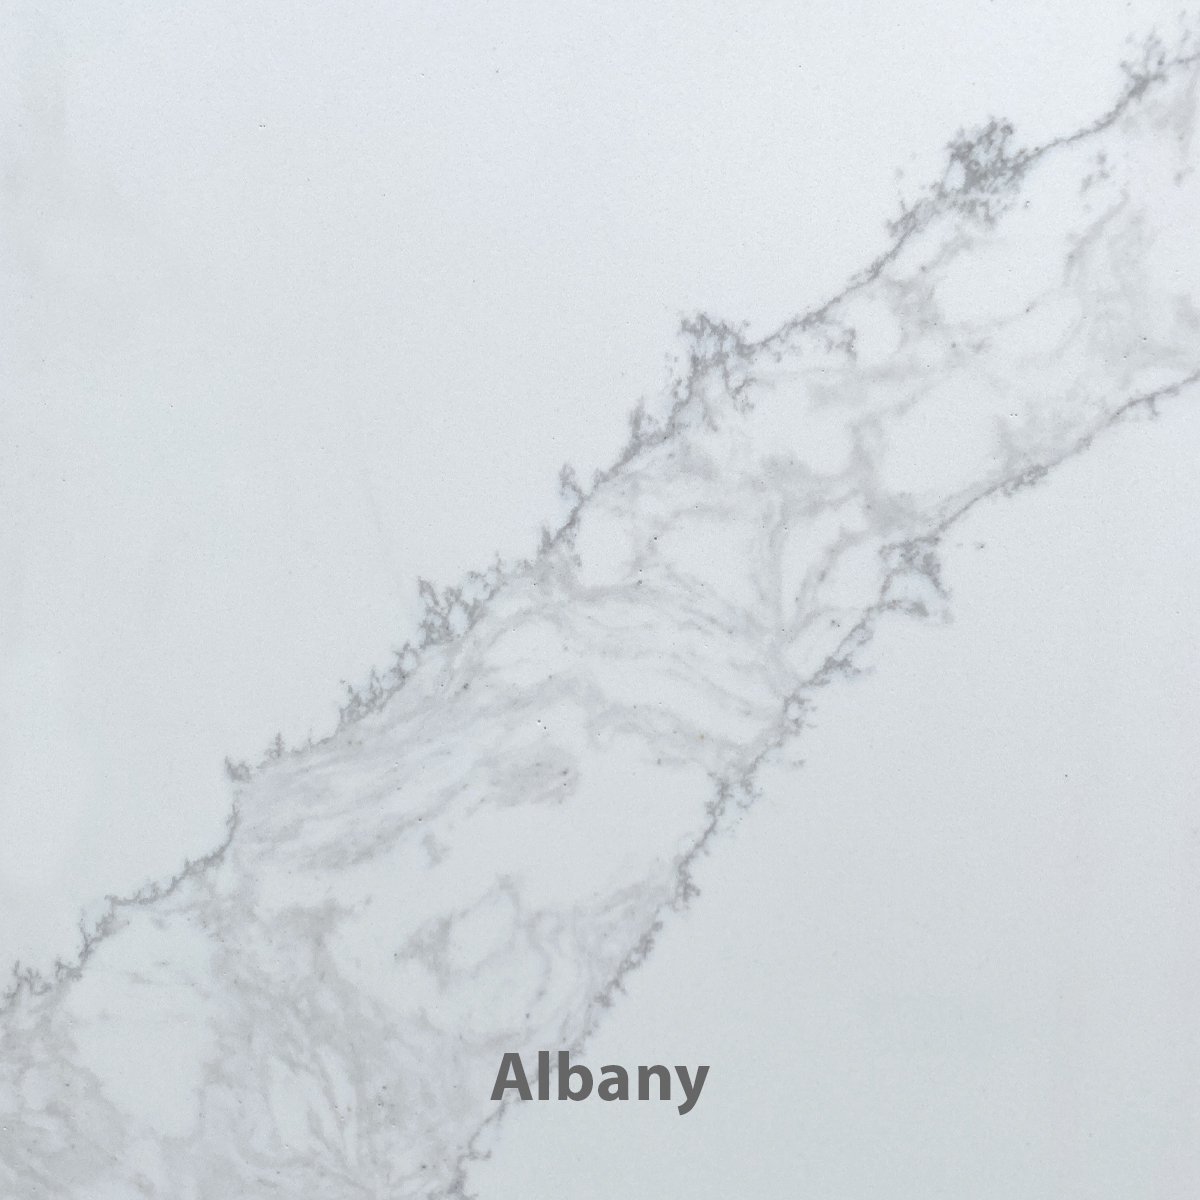 Albany_V2_12x12.jpg